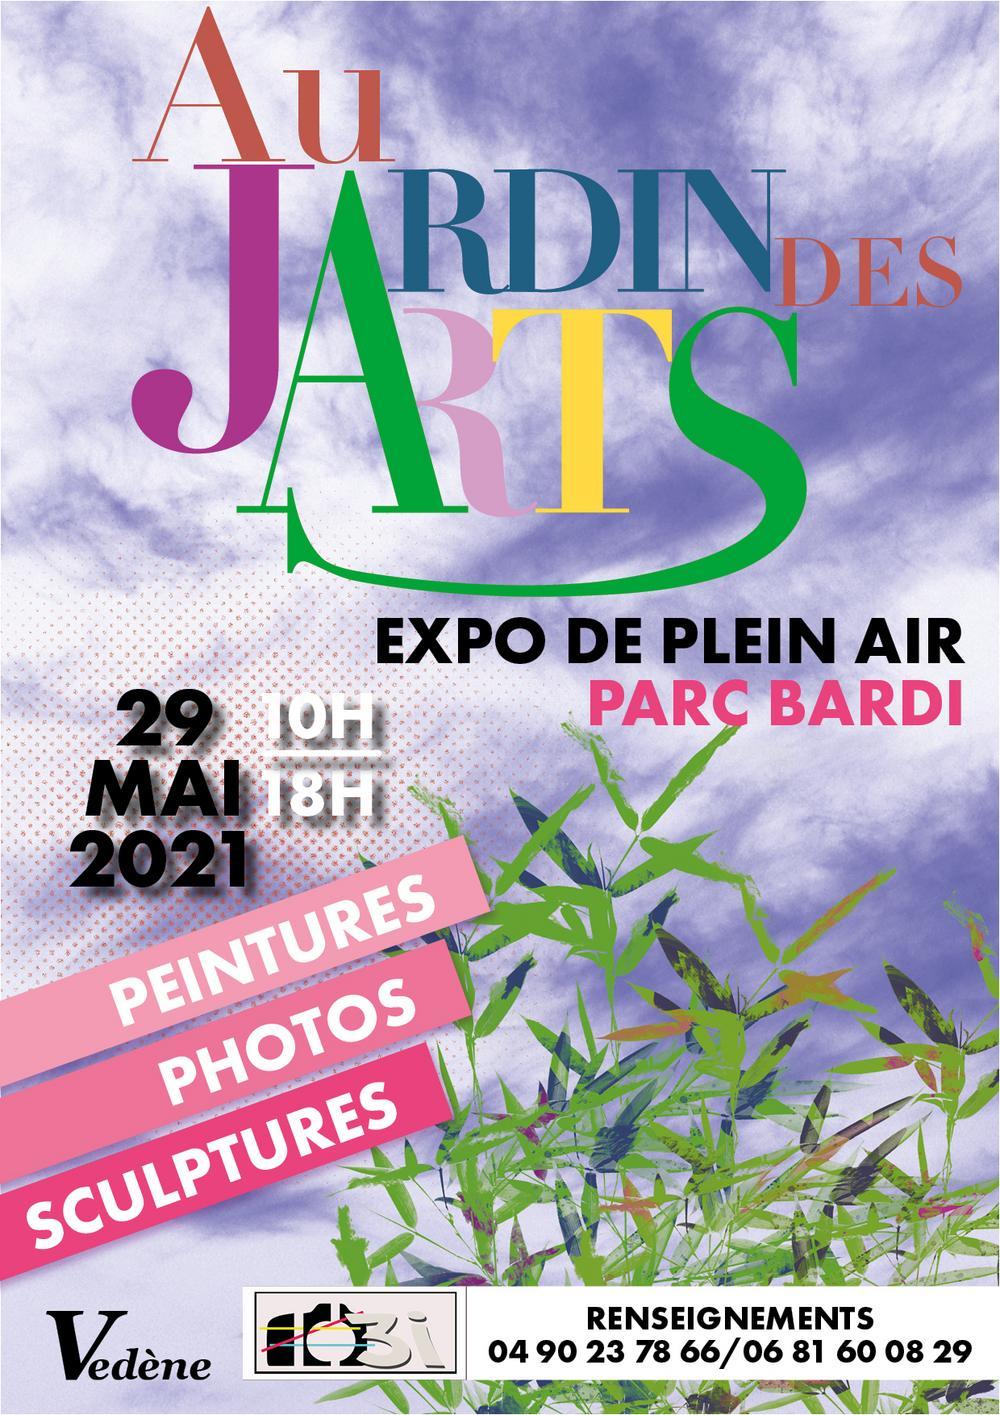 Exposition Au Jardin des ARTS à Vedene - samedi 29 mai 2021